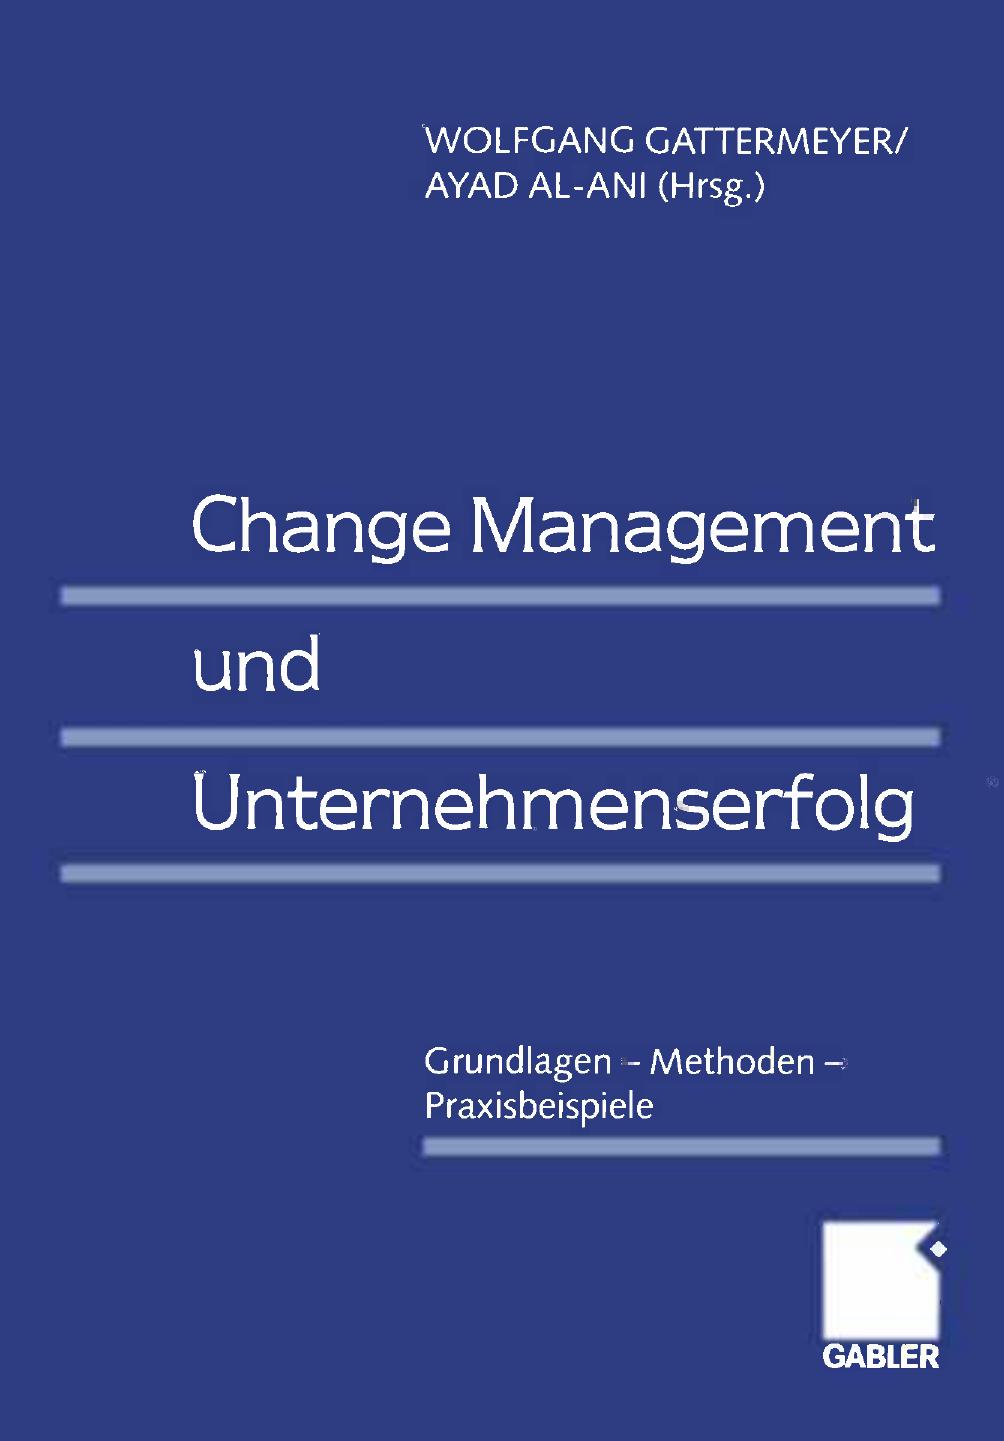 Change Management und Unternehmenserfolg: Grundlagen — Methoden — Praxisbeispiele